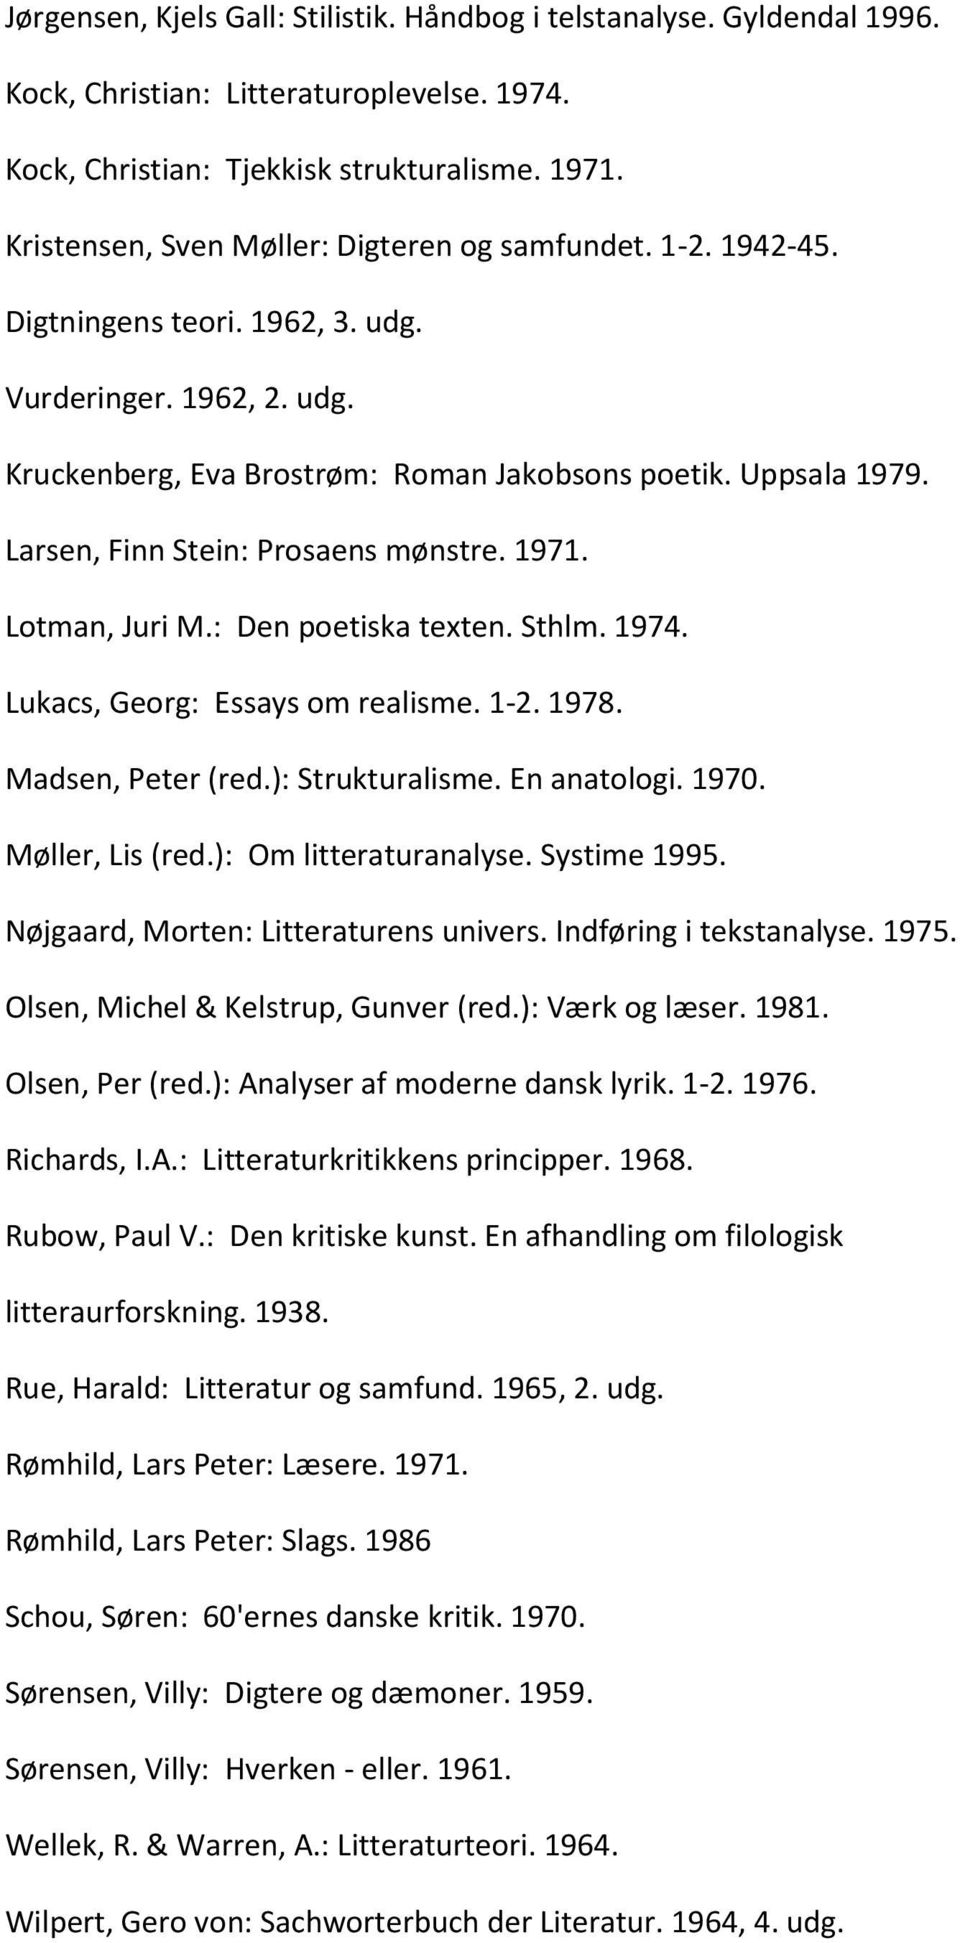 Larsen, Finn Stein: Prosaens mønstre. 1971. Lotman, Juri M.: Den poetiska texten. Sthlm. 1974. Lukacs, Georg: Essays om realisme. 1-2. 1978. Madsen, Peter (red.): Strukturalisme. En anatologi. 1970.